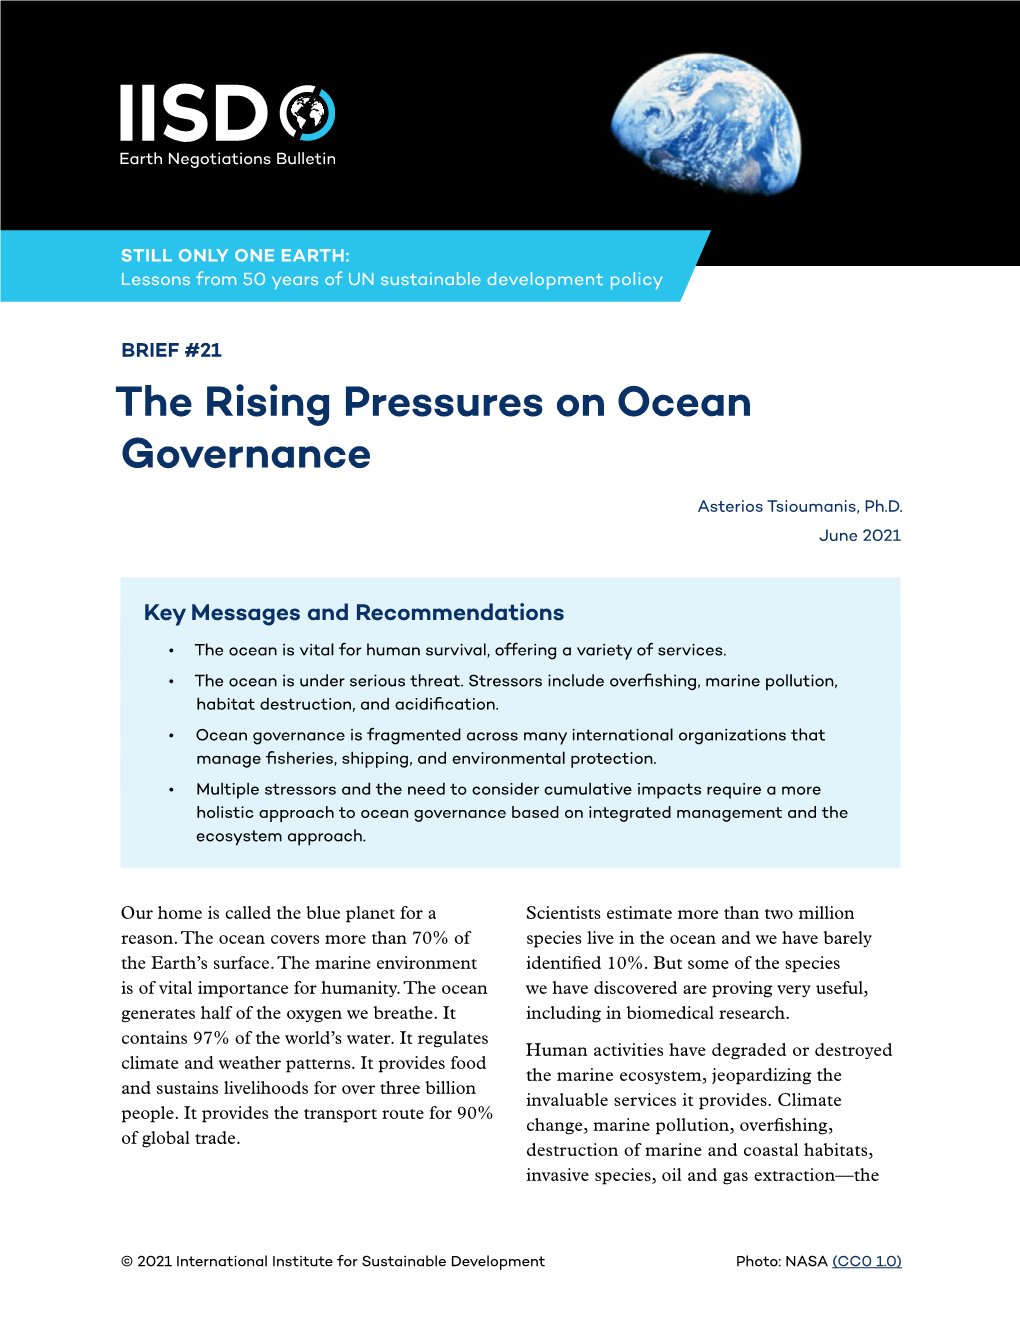 The Rising Pressures on Ocean Governance